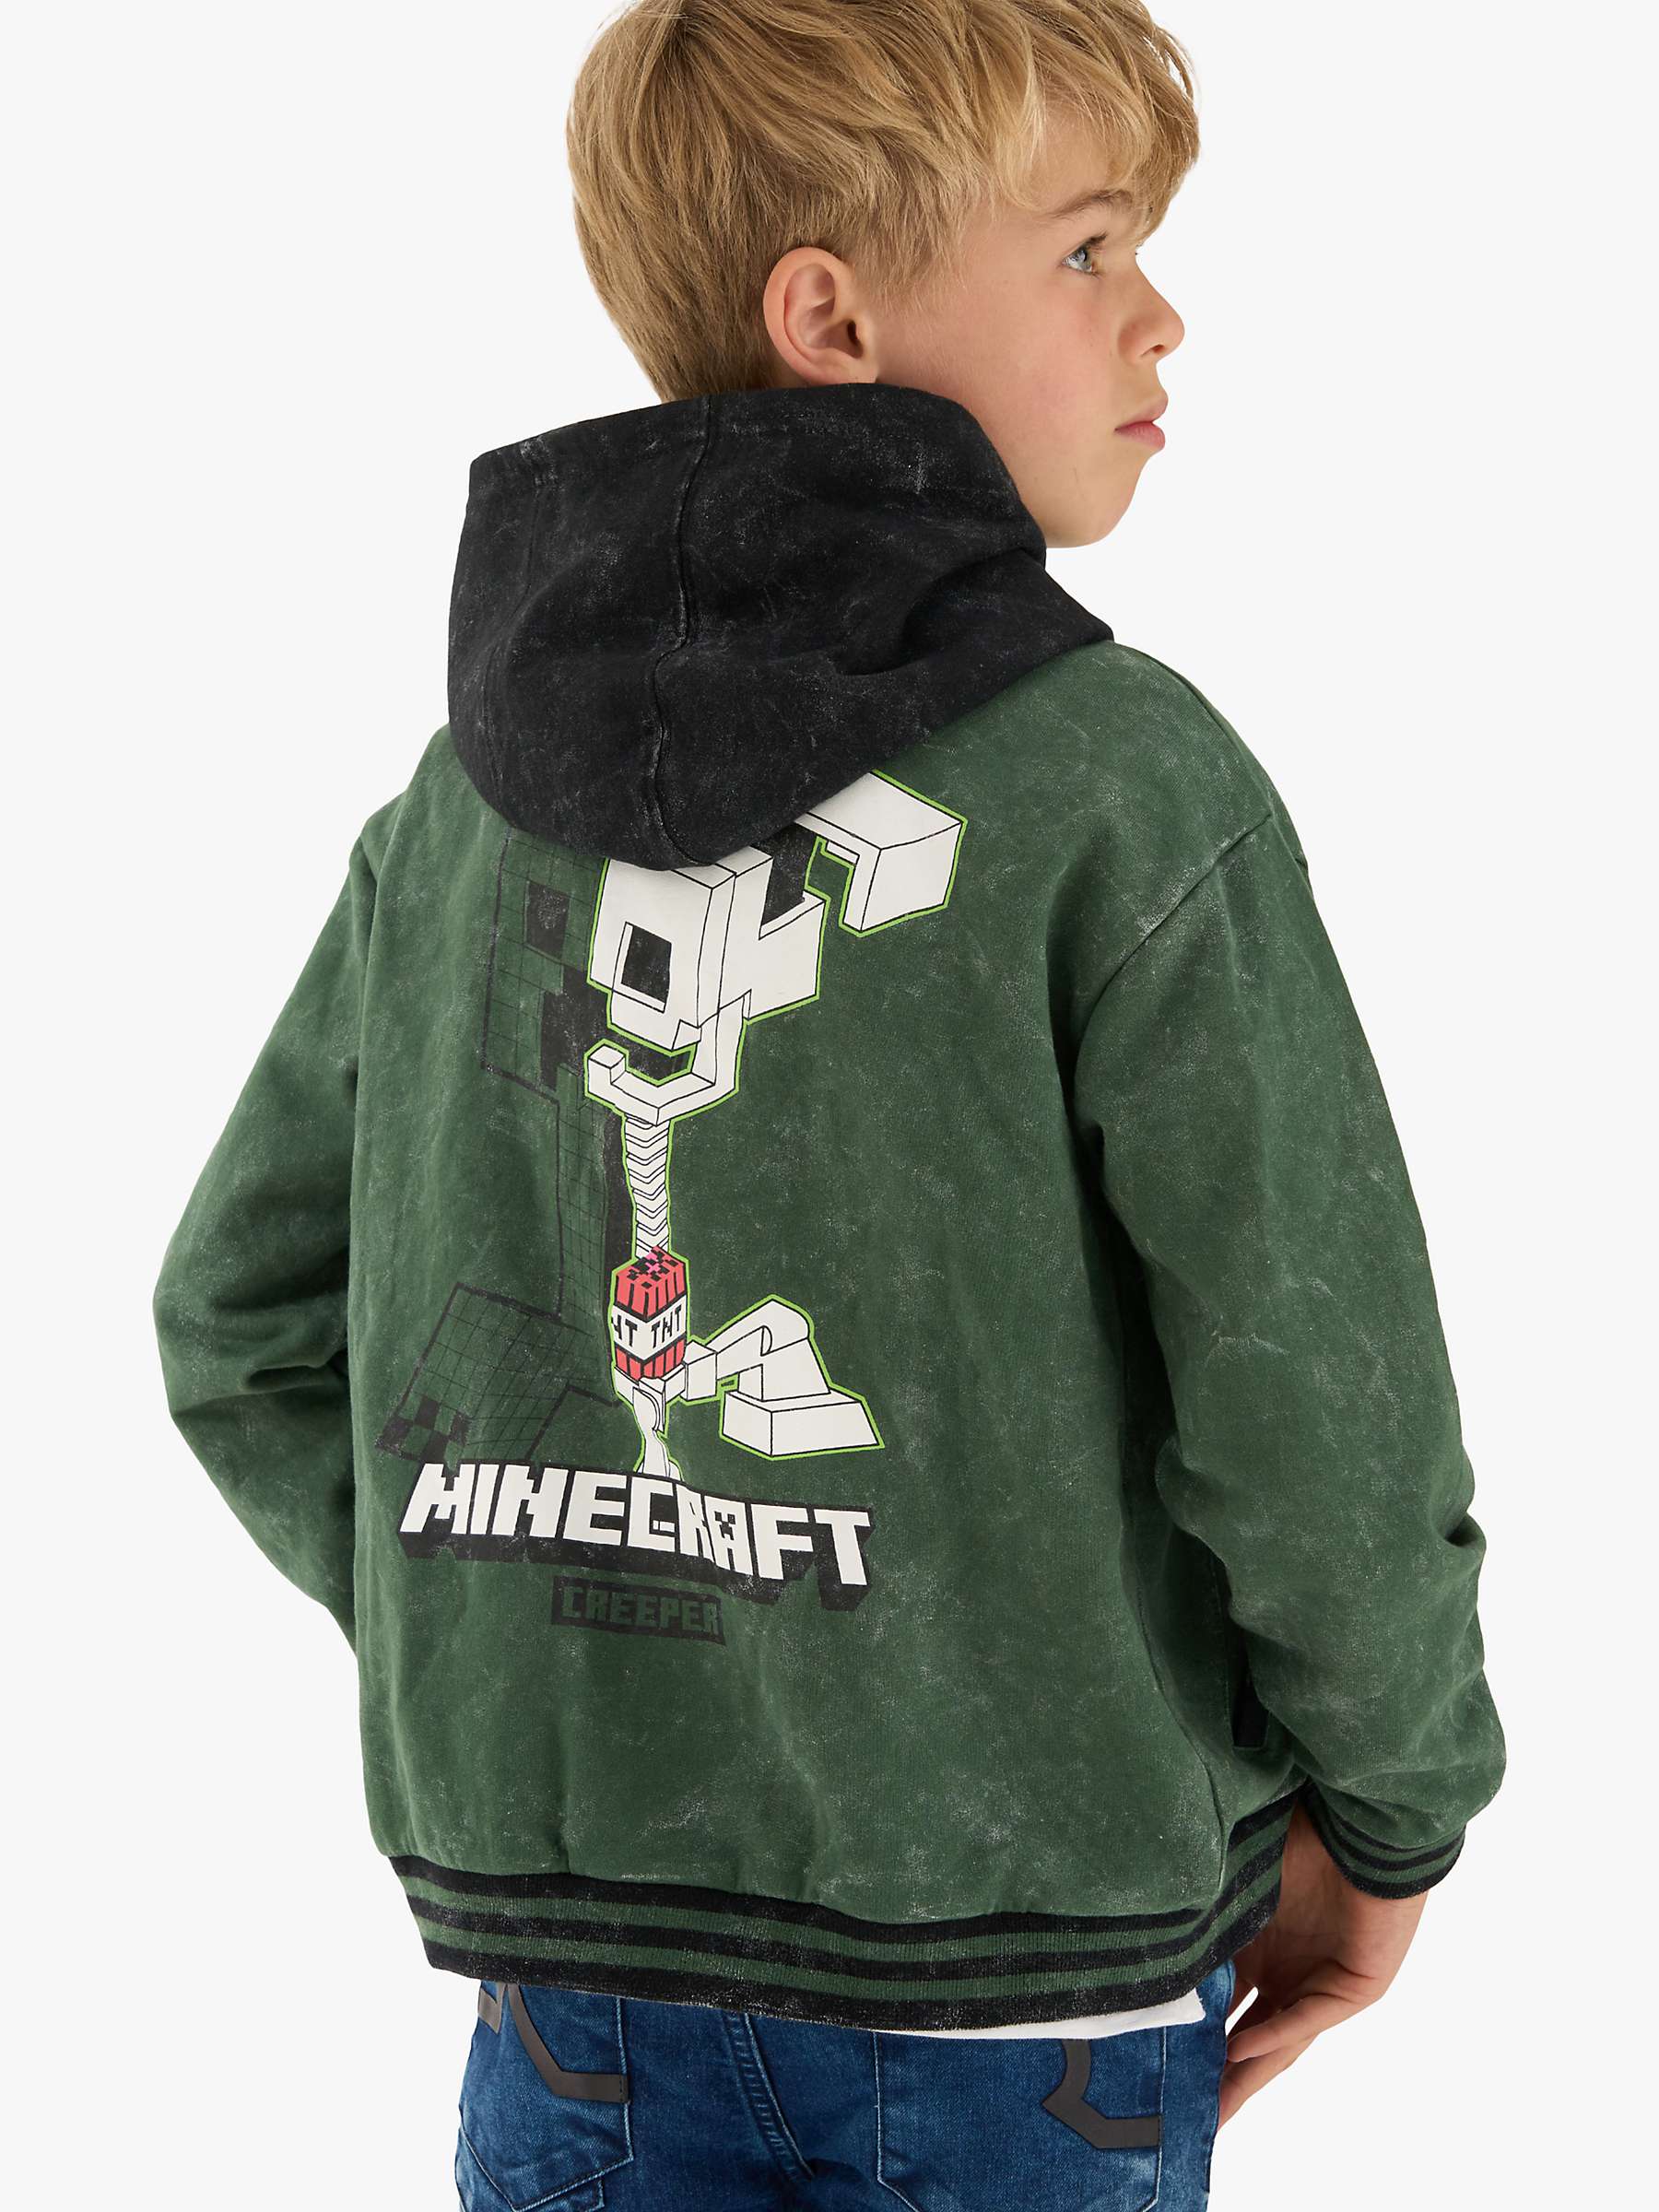 Buy Angel & Rocket Kids' Minecraft Bomber Jacket, Grey Online at johnlewis.com